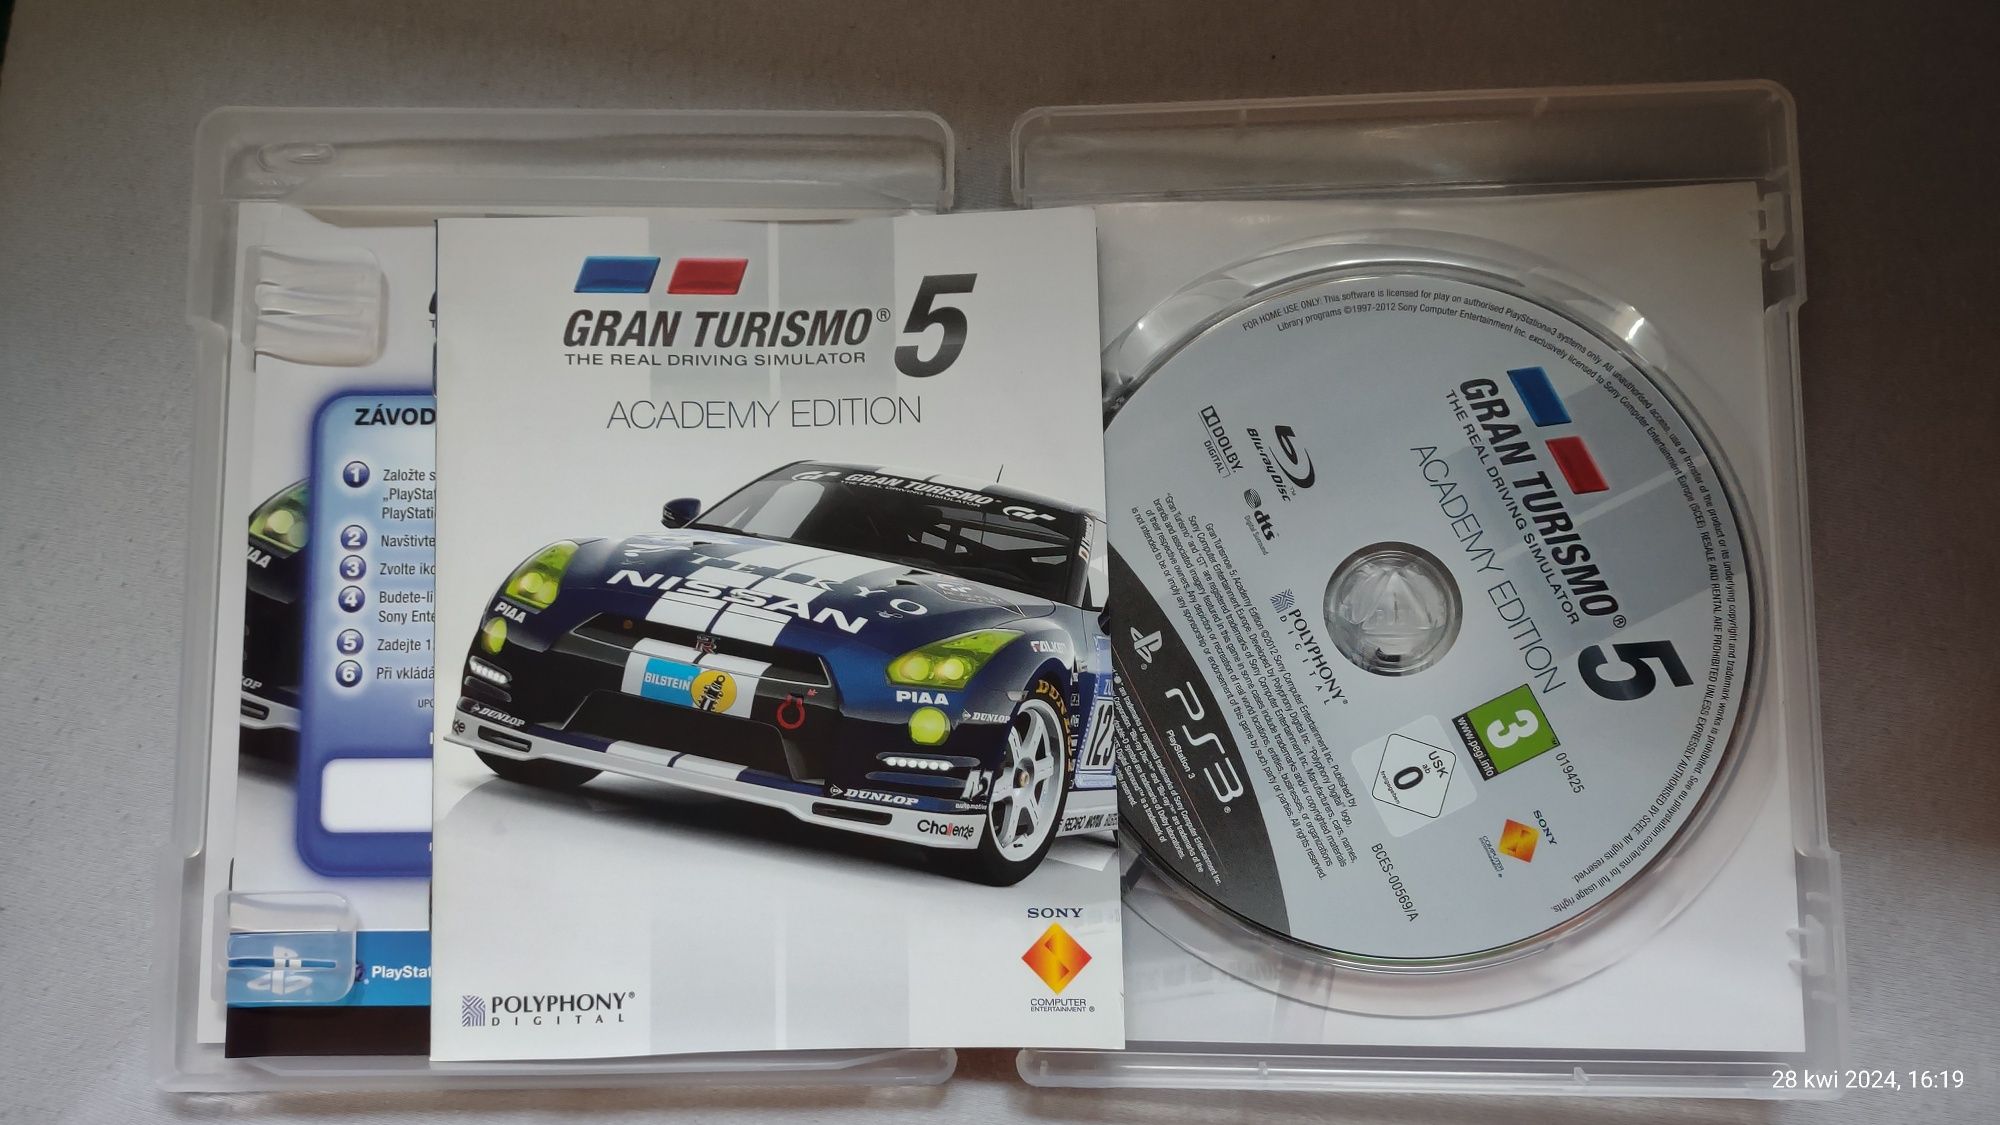 Gra PS3 Gran Turismo 5